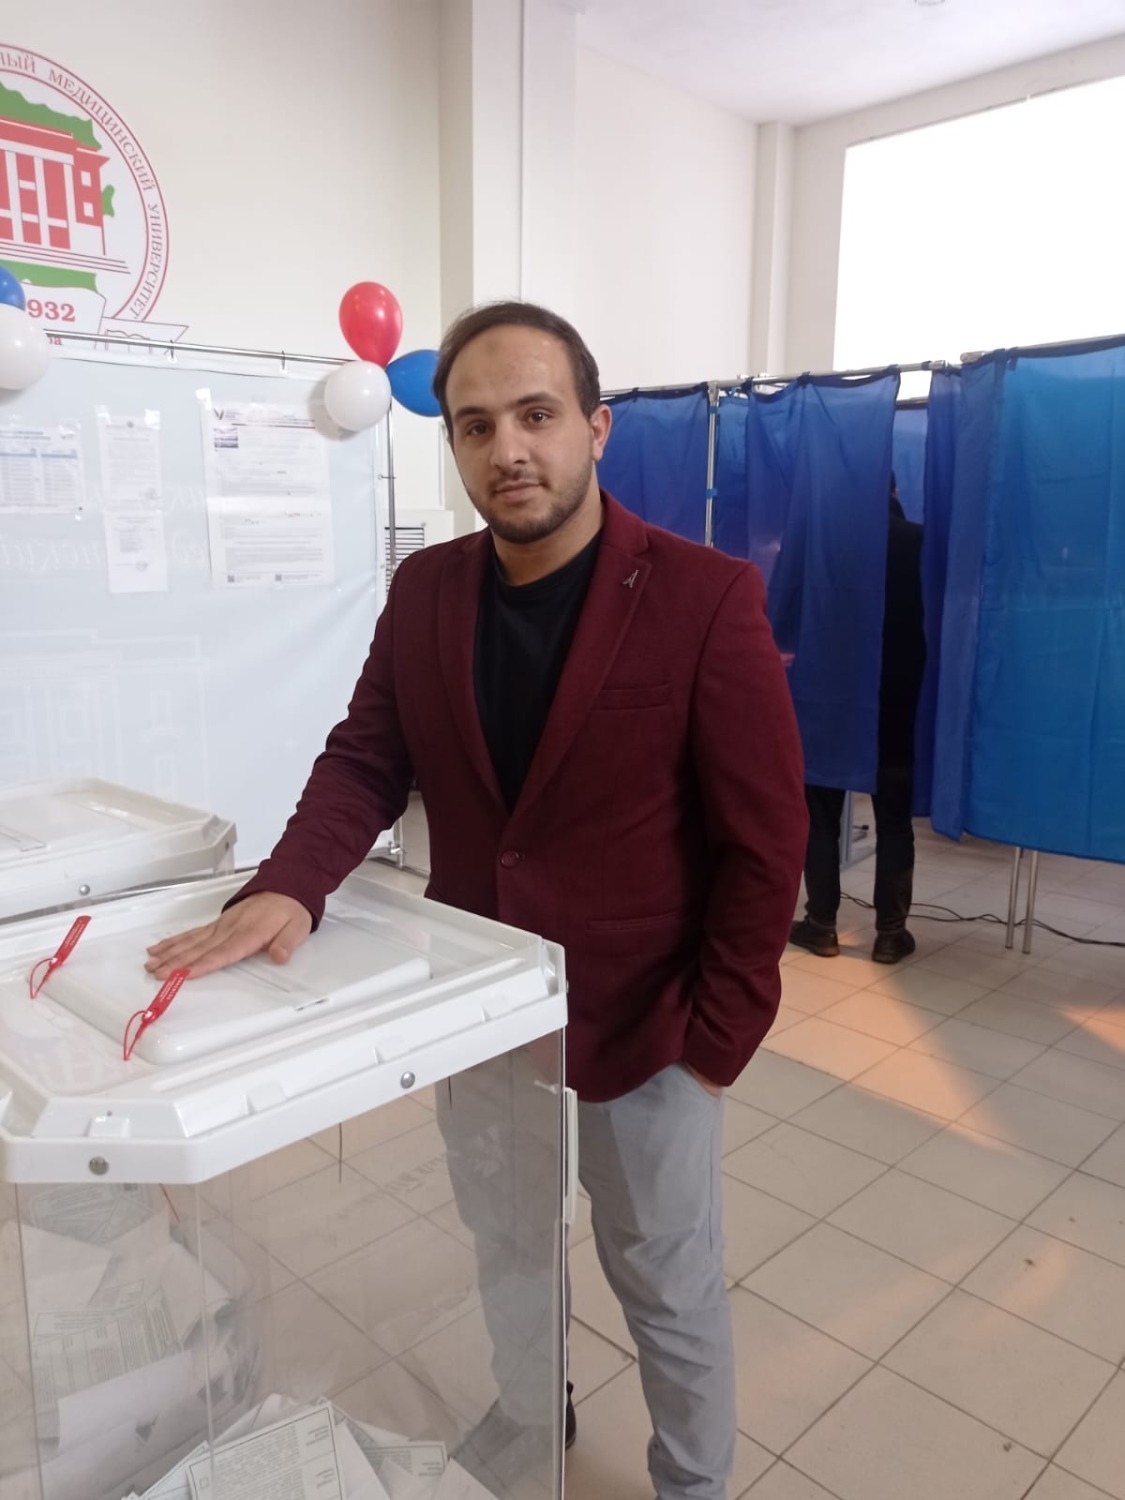 Новые граждане страны голосуют впервые в Башкирии